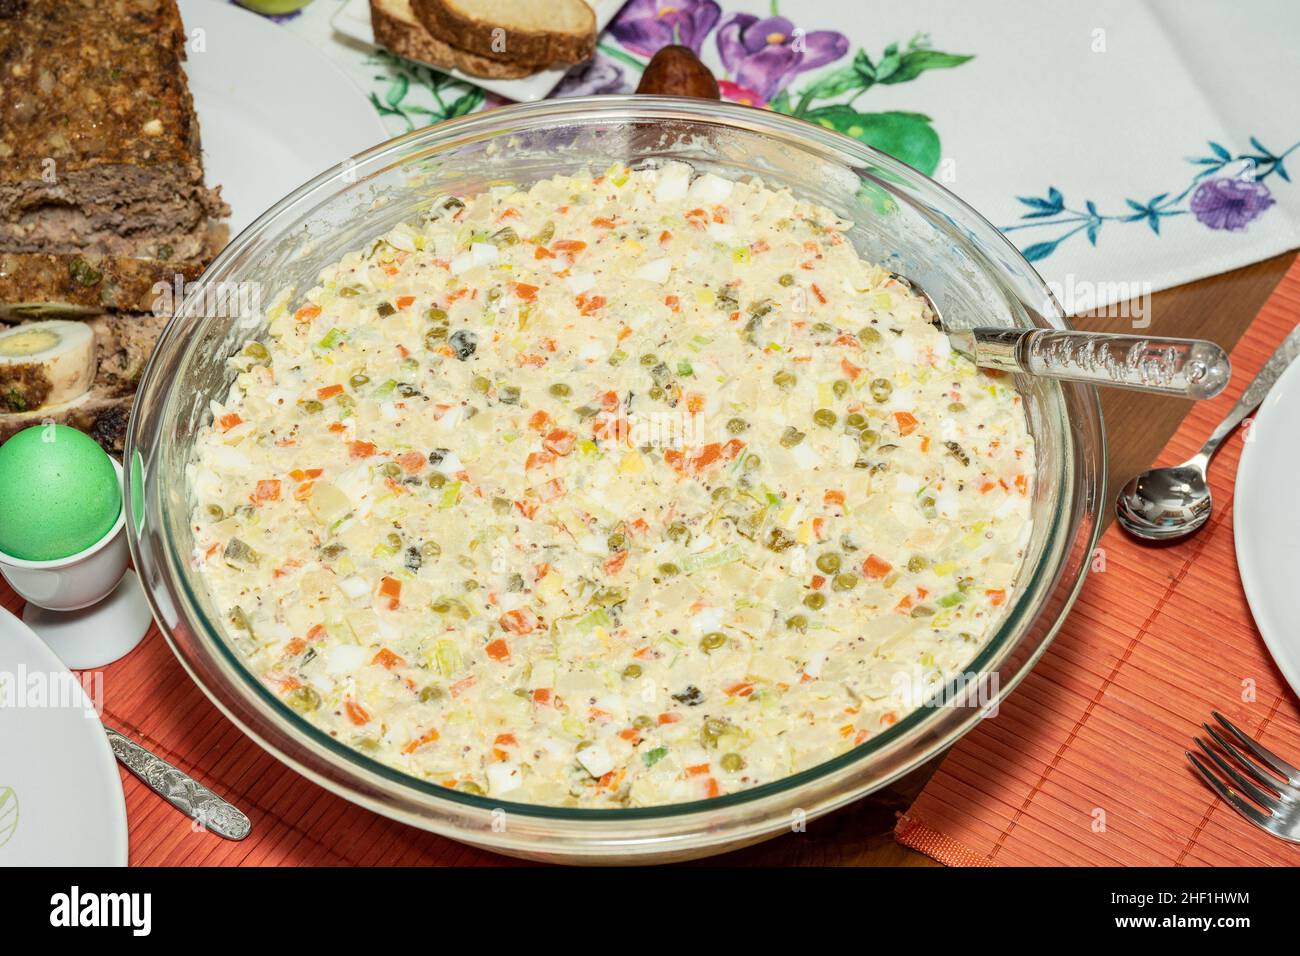 La Salade Olivier est une salade composée de pommes de terre en dés, de légumes et parfois de viandes reliées à la mayonnaise. Banque D'Images